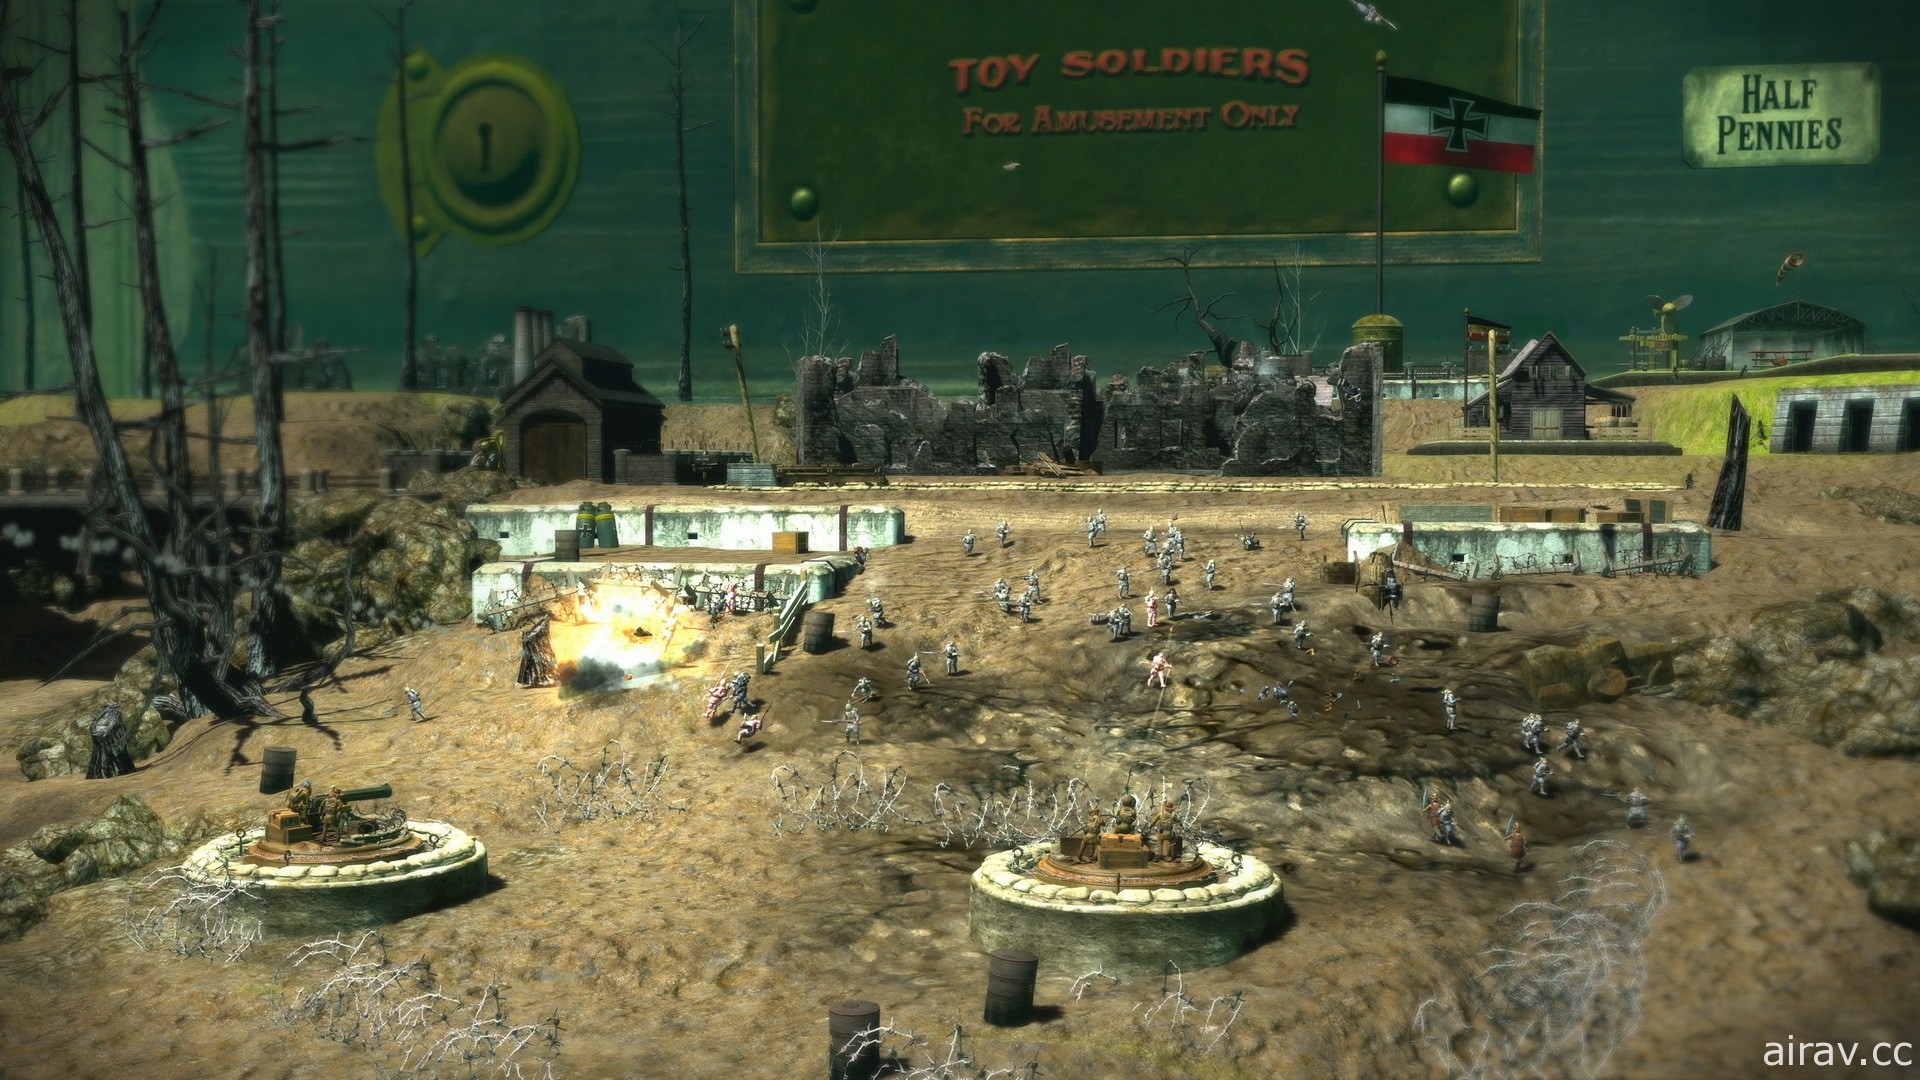 以 2010 年作品翻新《玩具兵團 HD》8 月問世 指揮一戰玩具士兵上陣